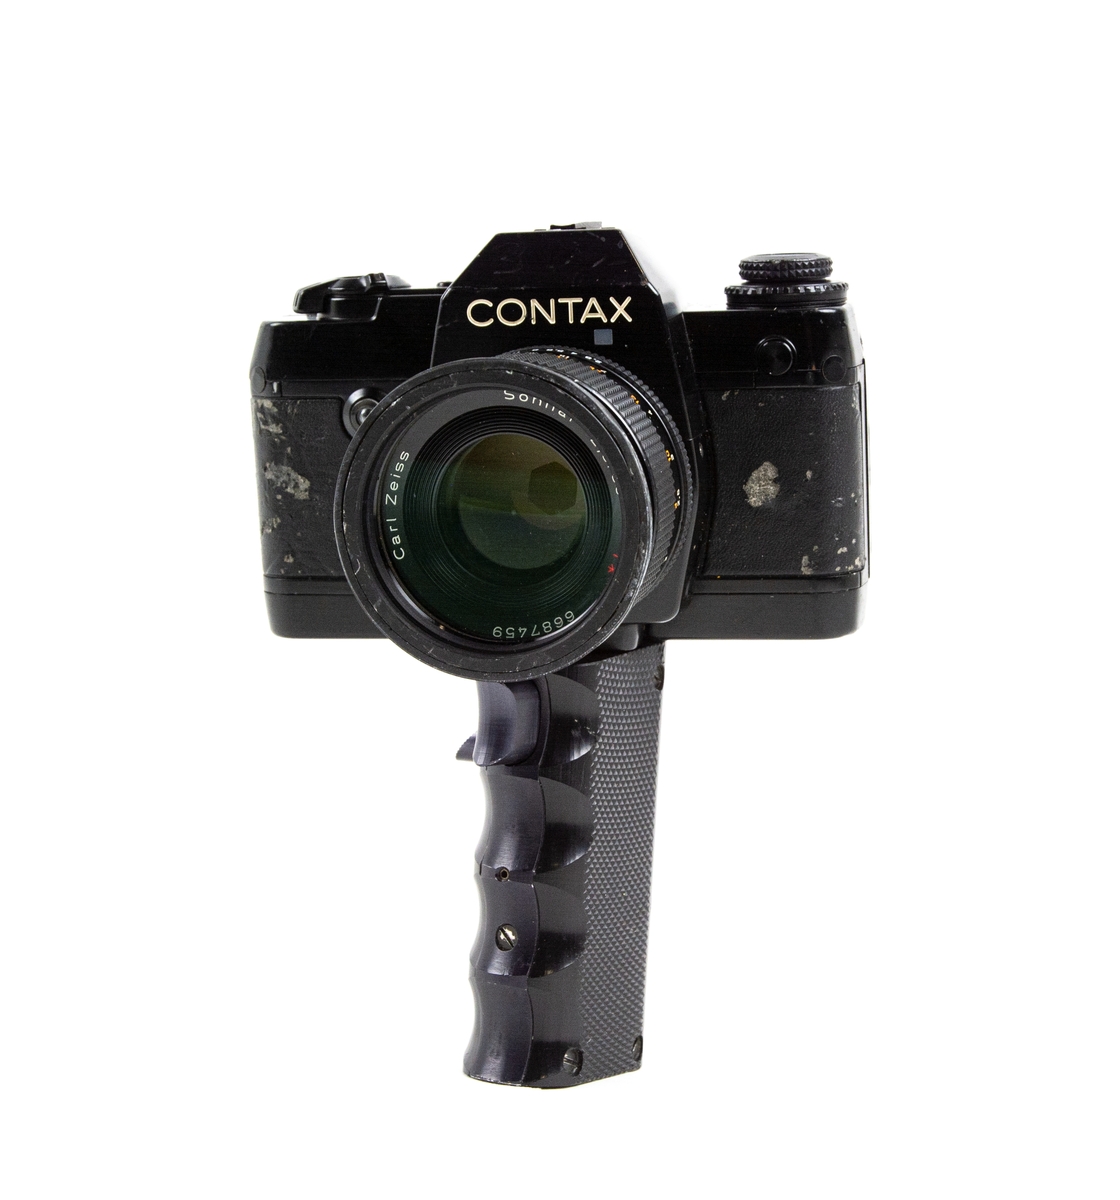 Handkamera HK 101 MT. På handkameran finns ett objektiv. Under kameran finns ett längre handtag varpå det finns 2 knappar för utlösning av film.
